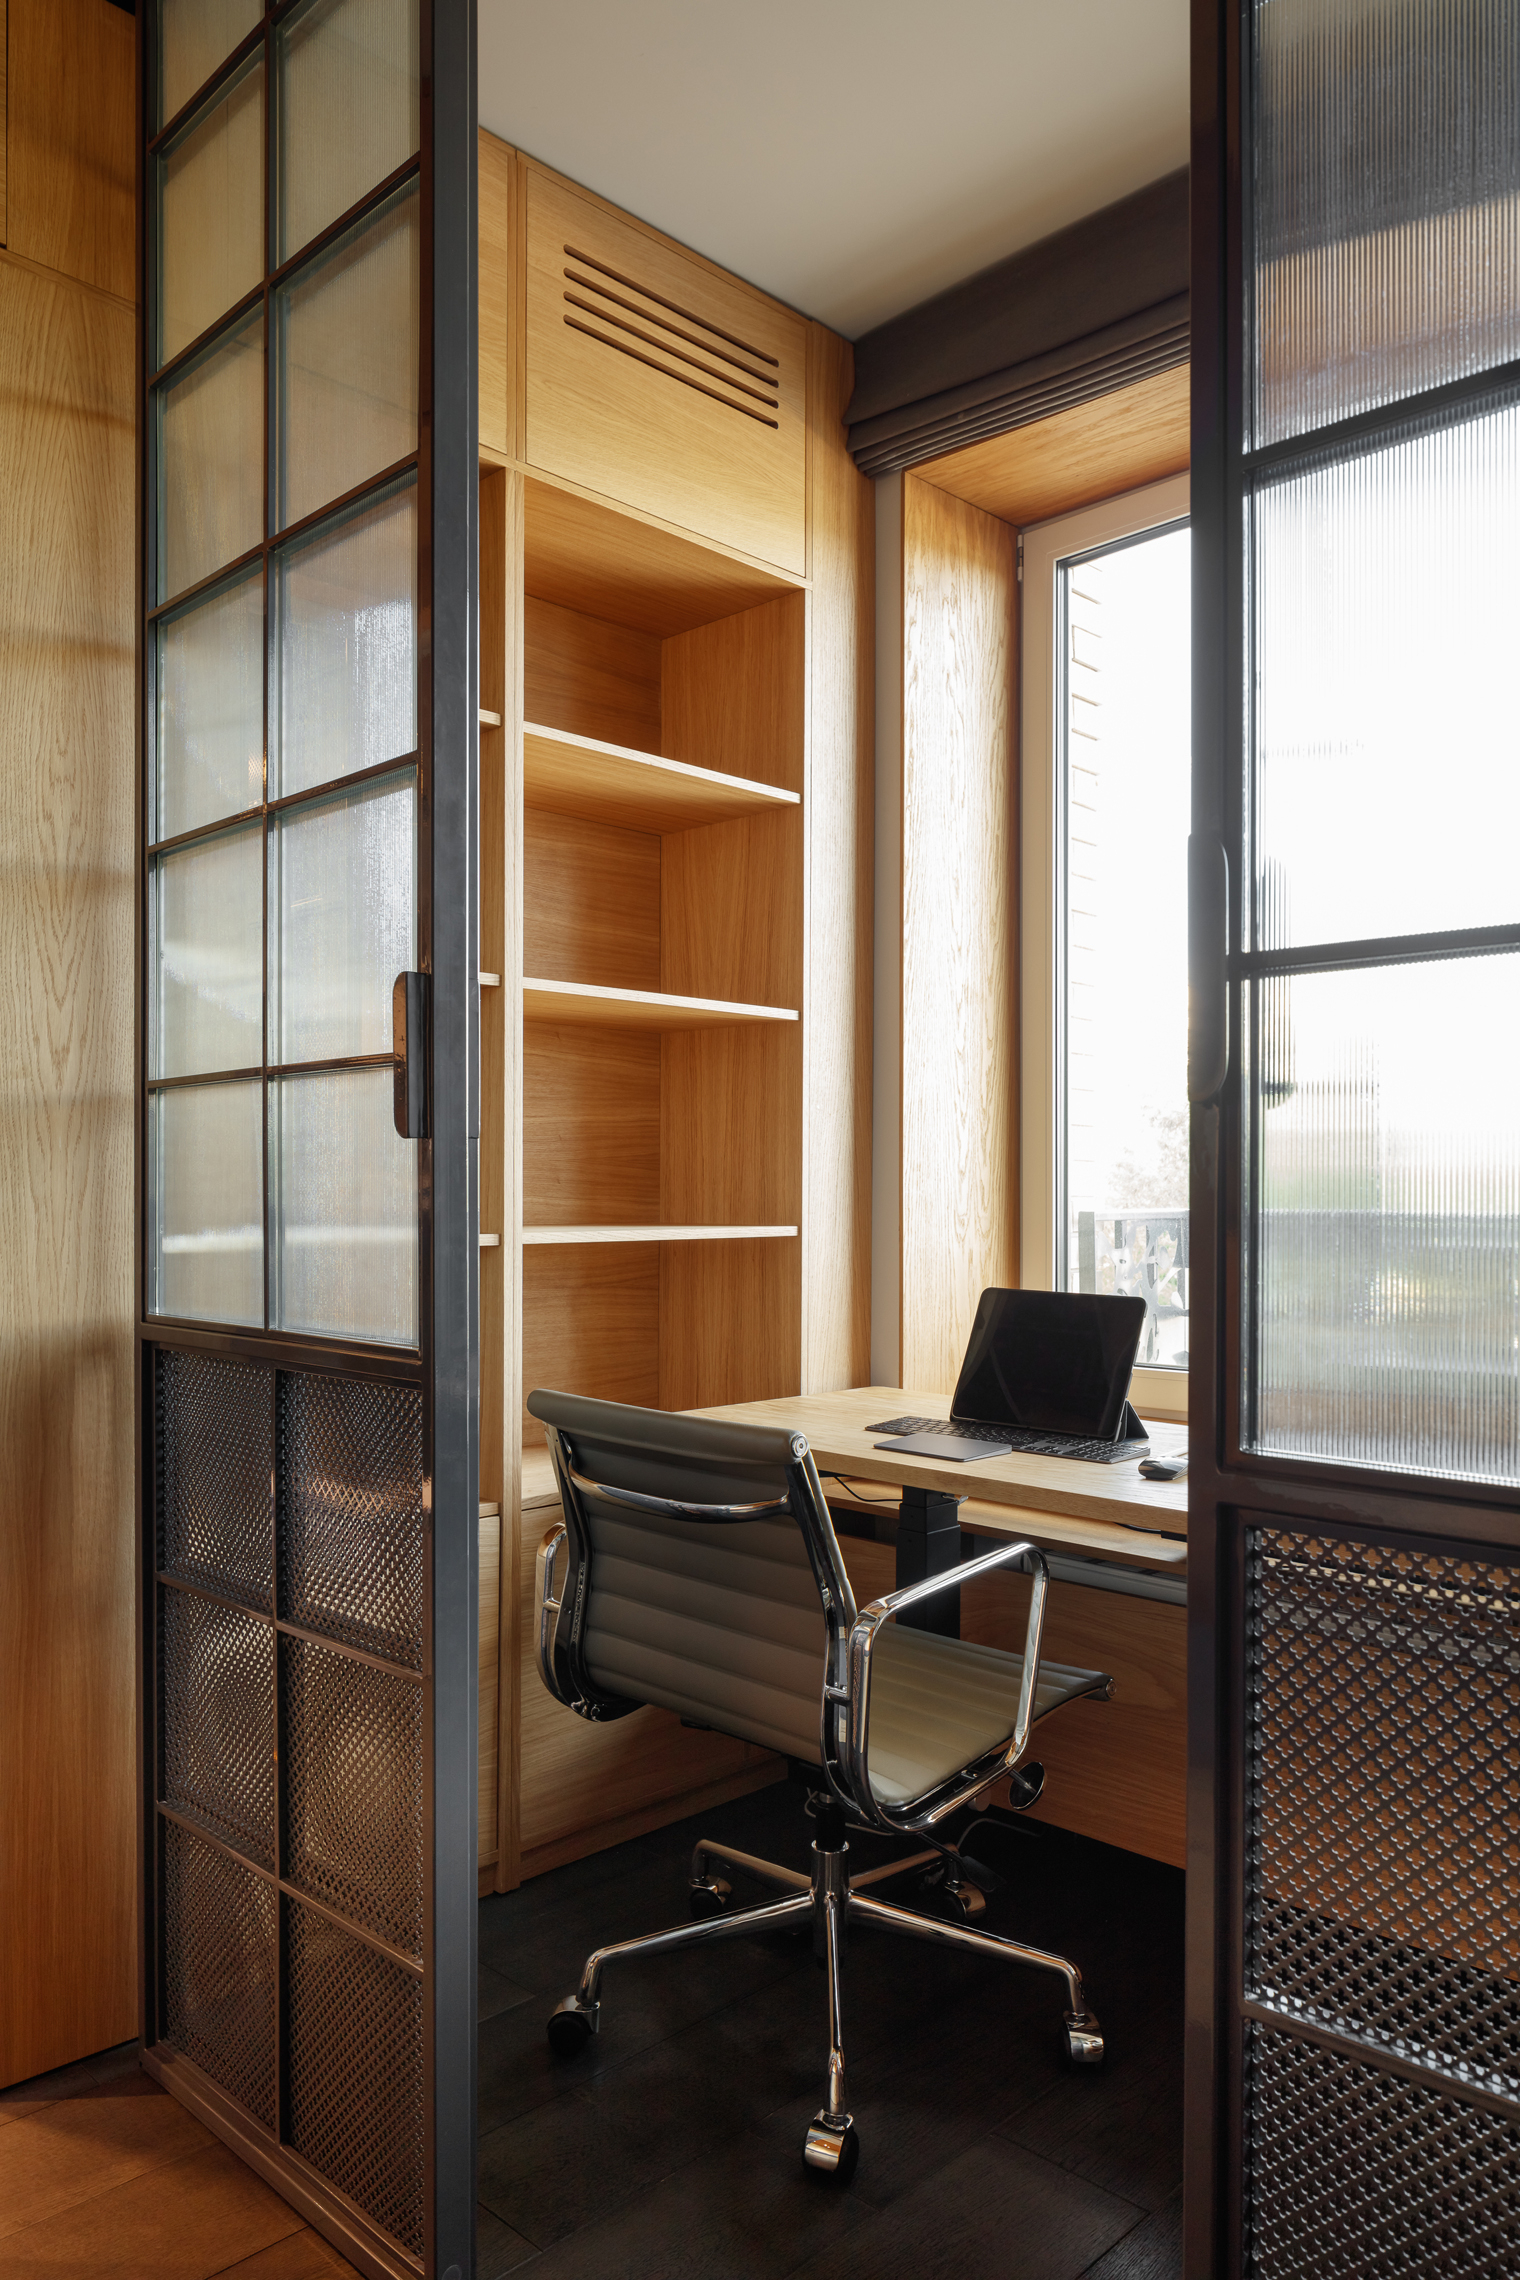 Абсолютно вся мебель, кроме офисного кресла, была изготовлена для этого кабинета на заказ по эскизам архитекторов